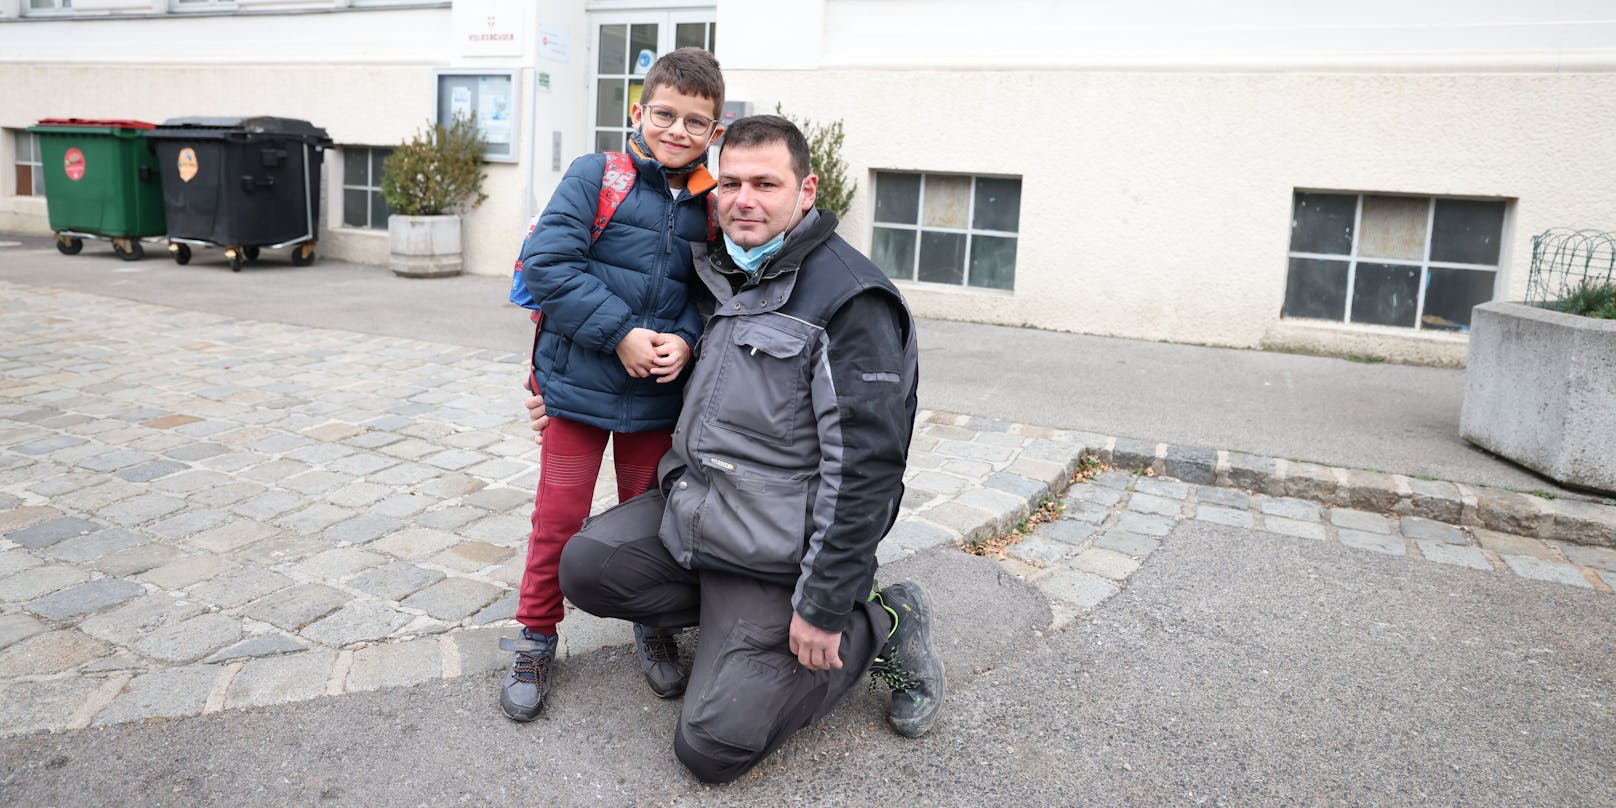 Goran (46, Techniker) mit Sohn David (7) "Mein Sohn muss in die Schule gehen. Meine Frau und ich sind berufstätig und wir haben keine Verwandten hier in Österreich, die uns bei der Betreuung unterstützen könnten."